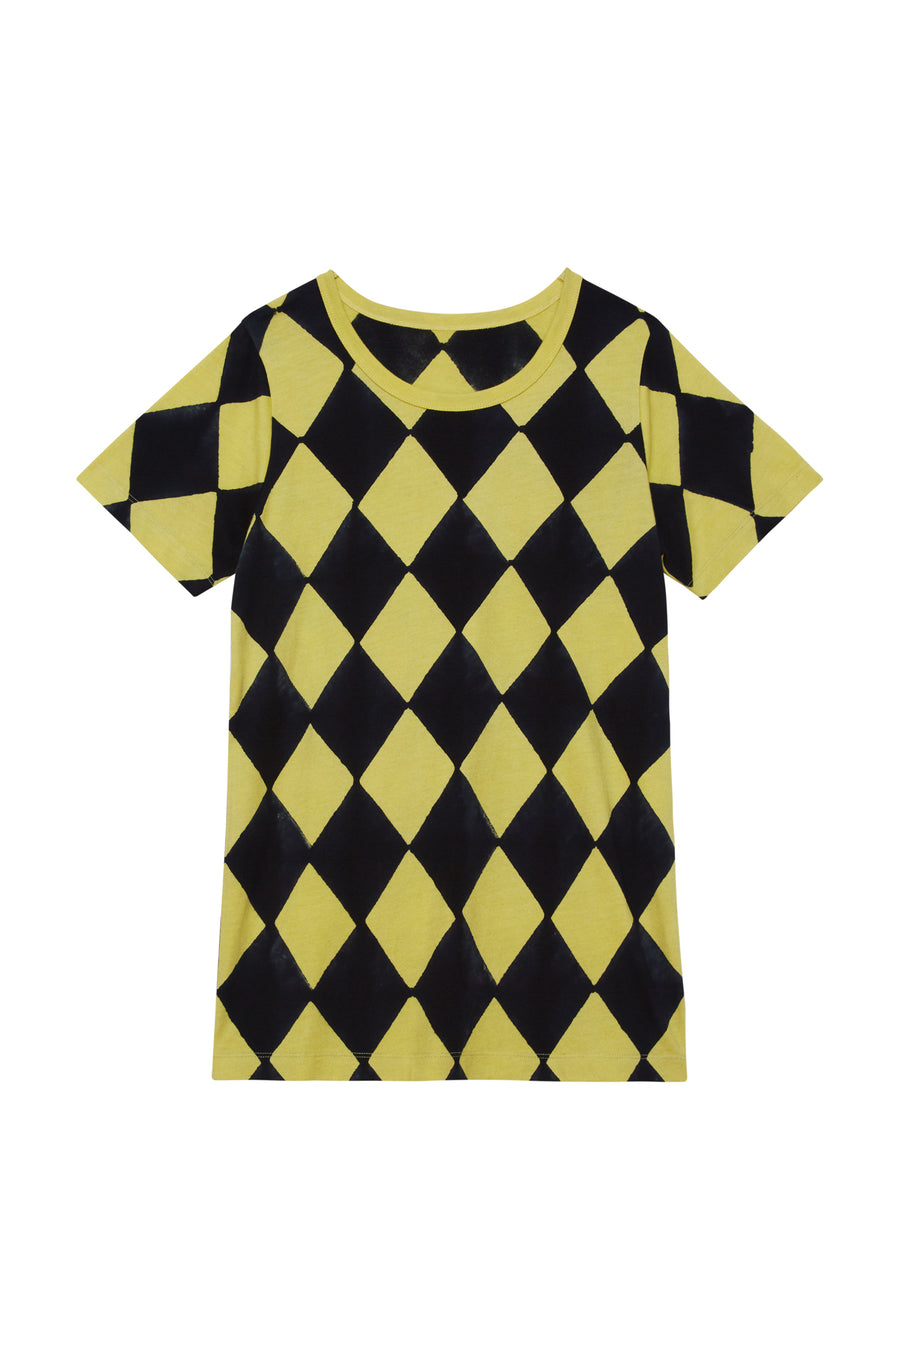 Batsheva T-Shirt in Black & Yellow Daisy